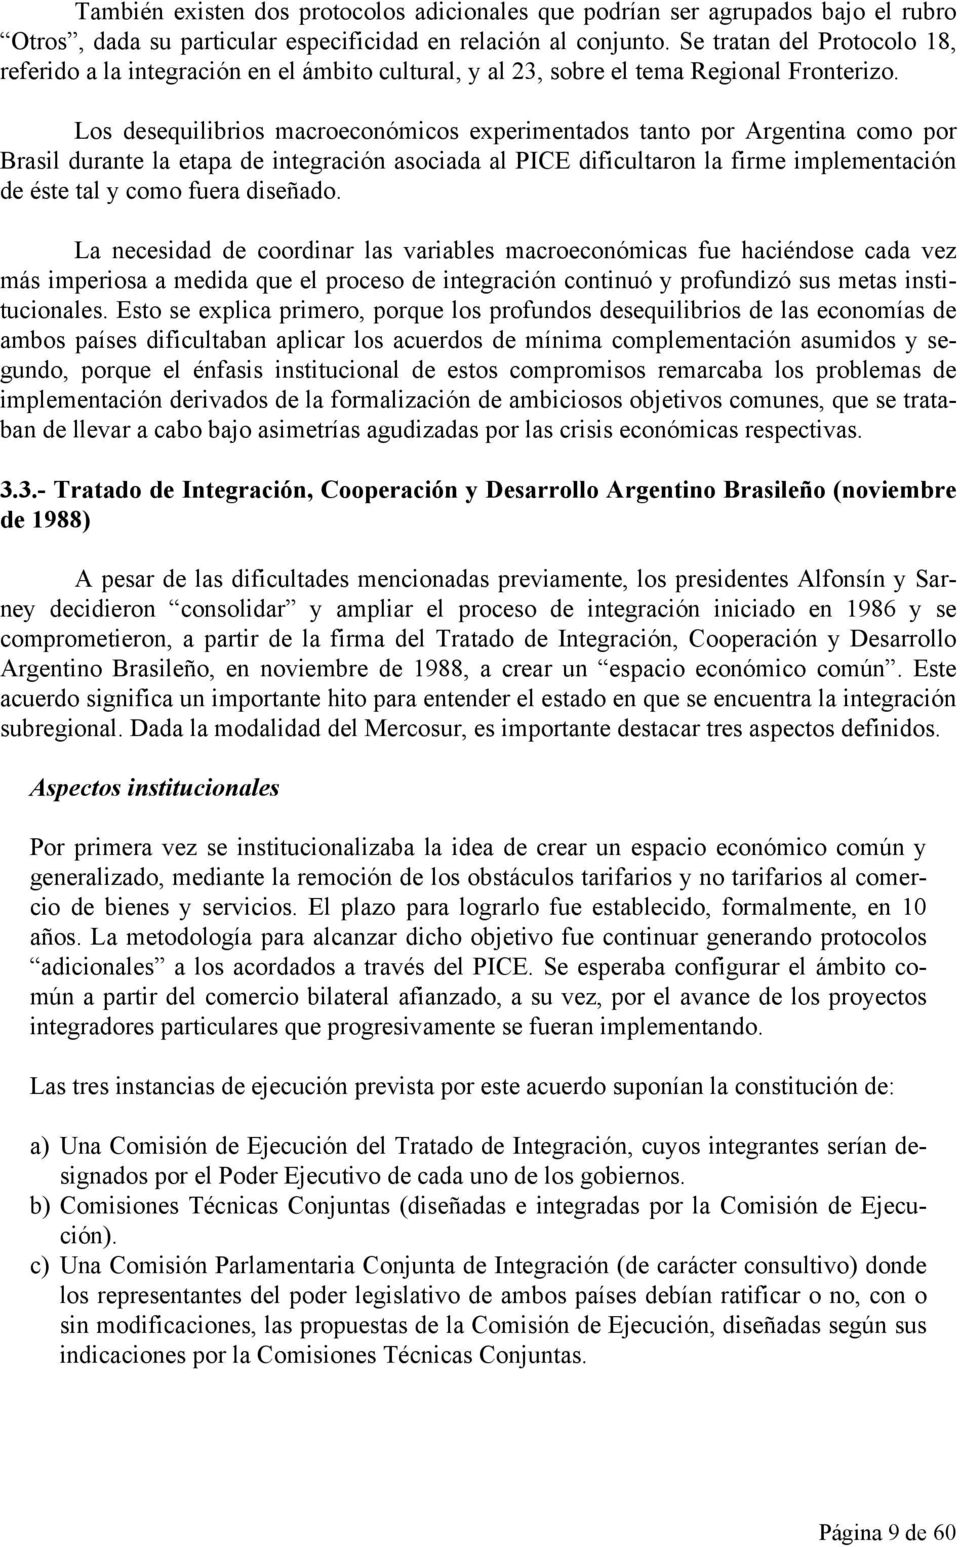 Los desequilibrios macroeconómicos experimentados tanto por Argentina como por Brasil durante la etapa de integración asociada al PICE dificultaron la firme implementación de éste tal y como fuera